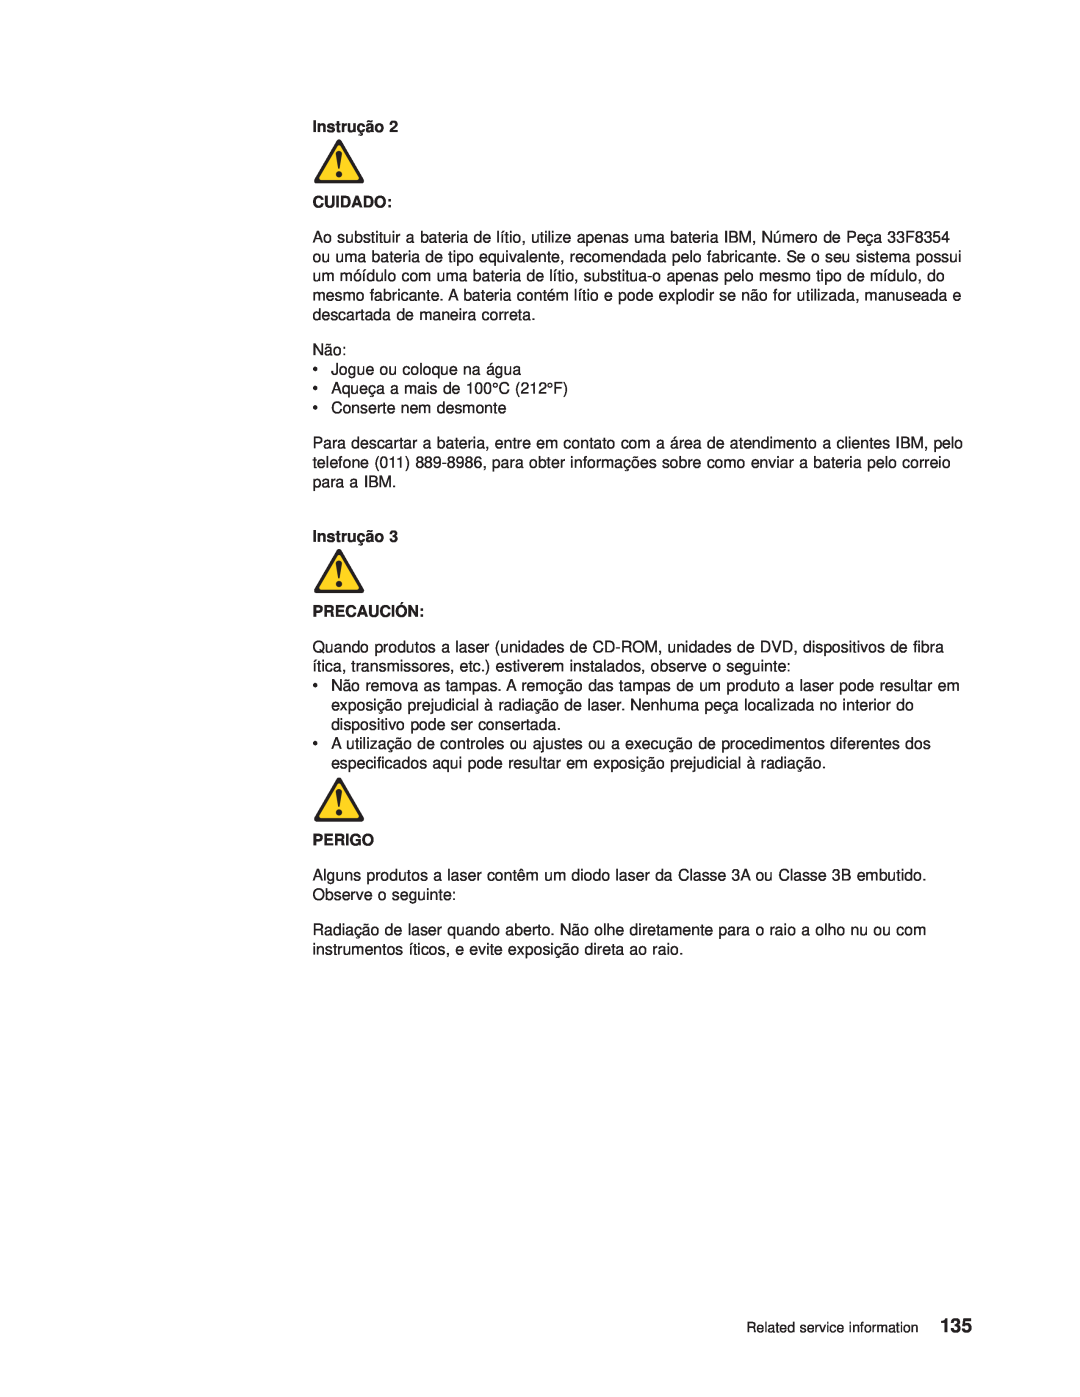 IBM 8682 manual Instrução CUIDADO, Instrução PRECAUCIÓN, Perigo 